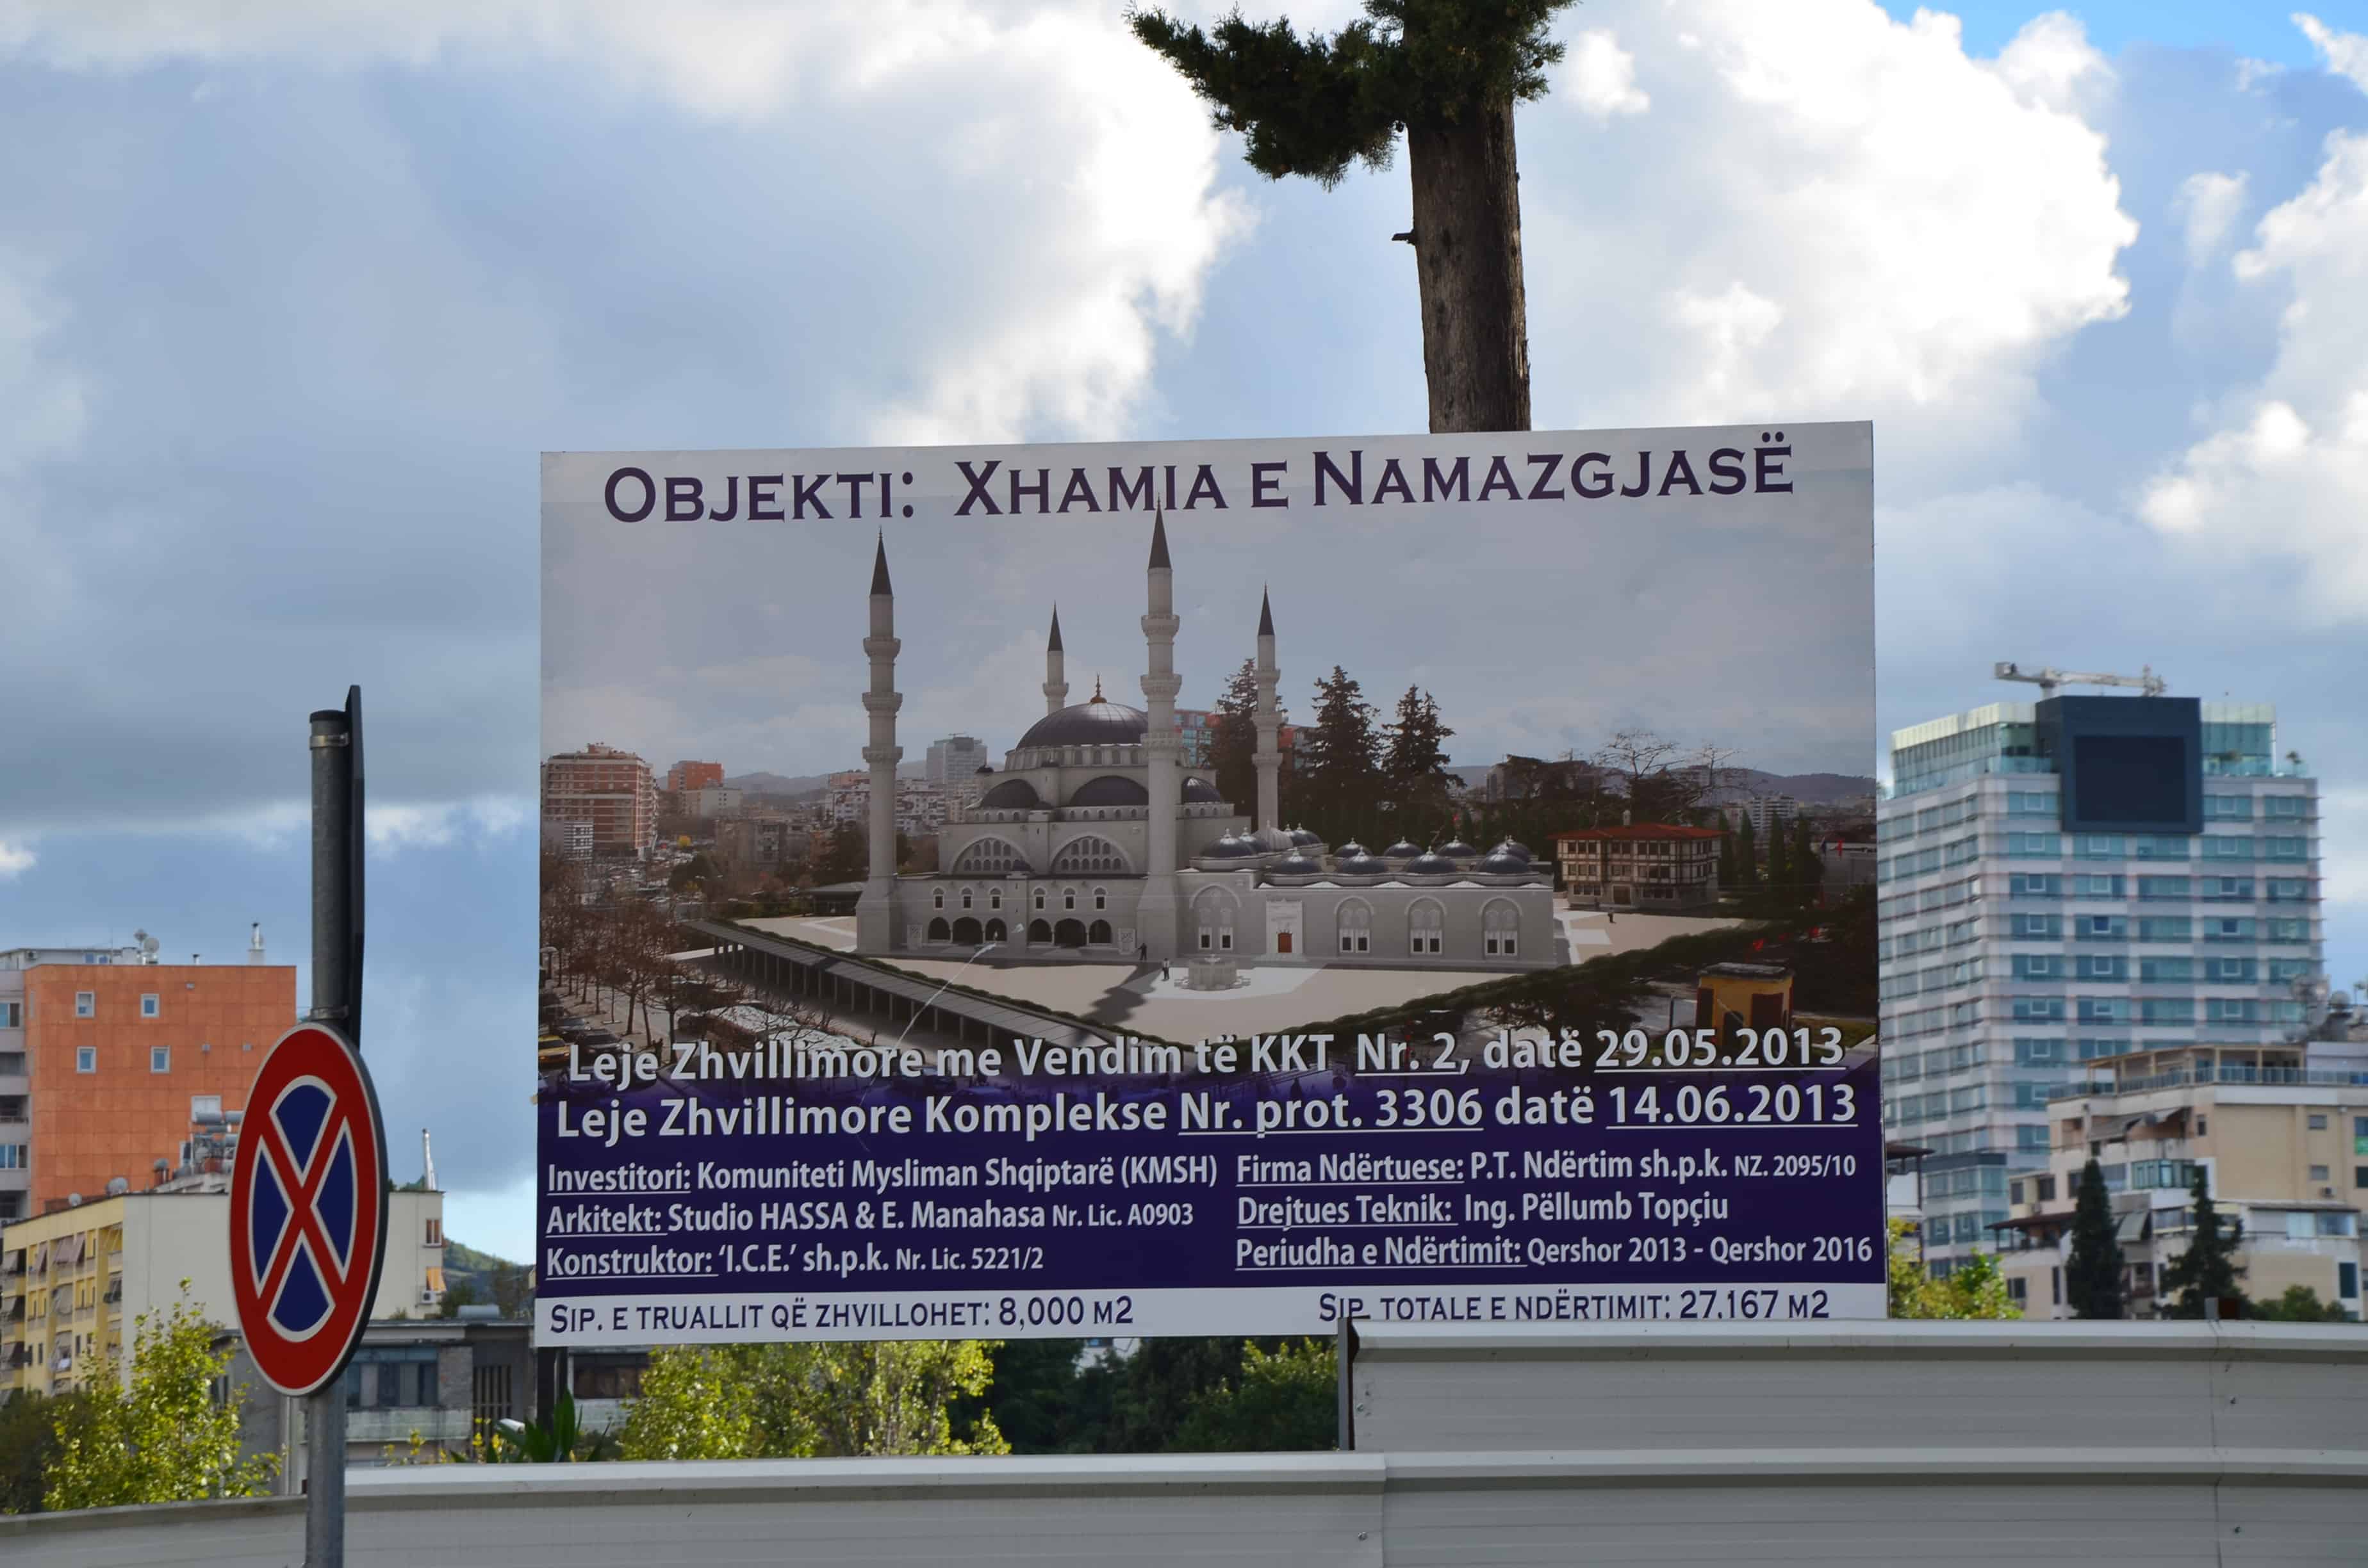 Xhamia e Namazgjasë construction site in Tiranë, Albania